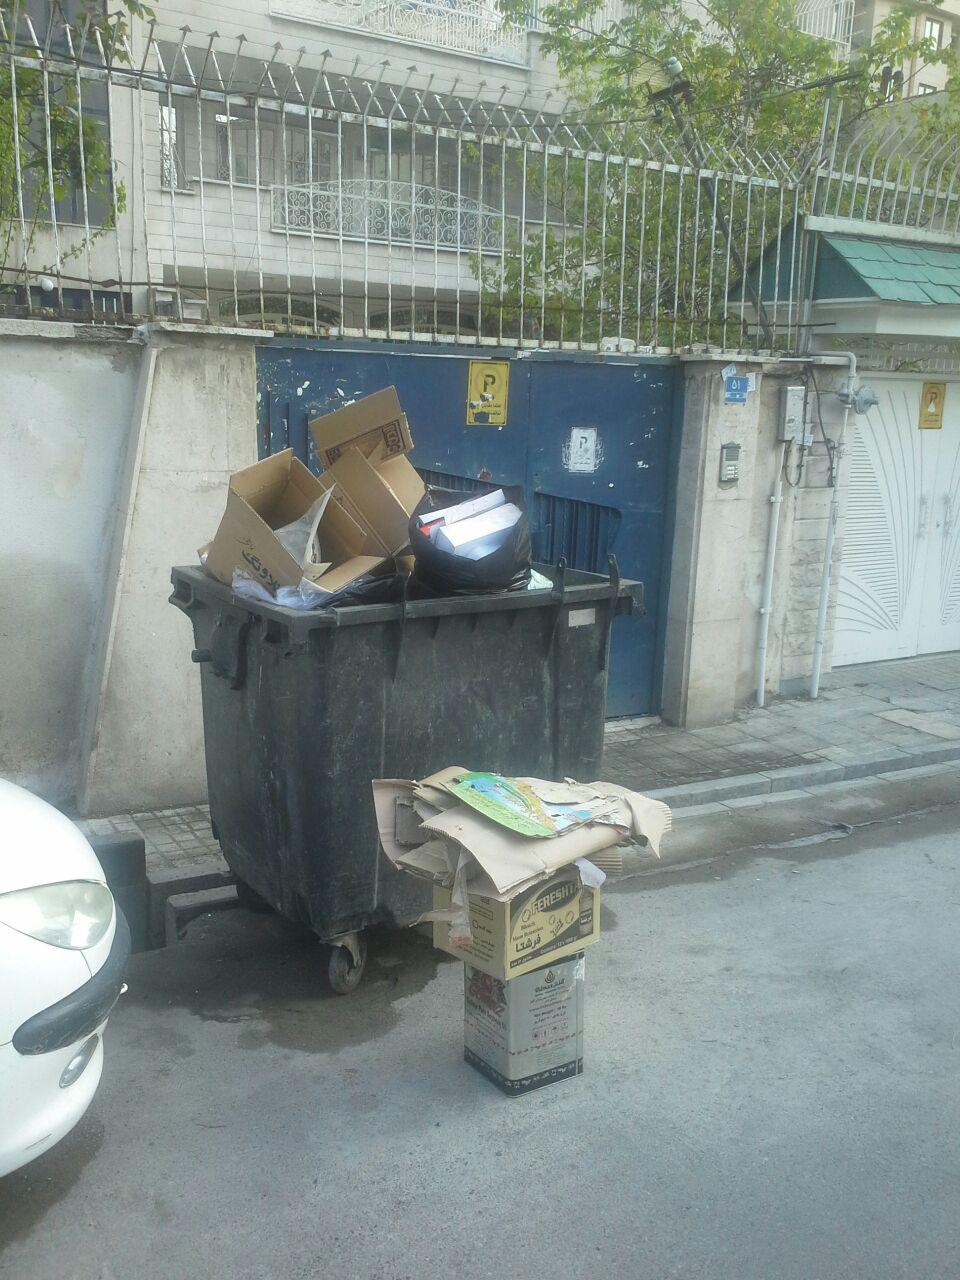 سطل آشغالهای لعنتی در محله جام جم + عکس شهردار محترم